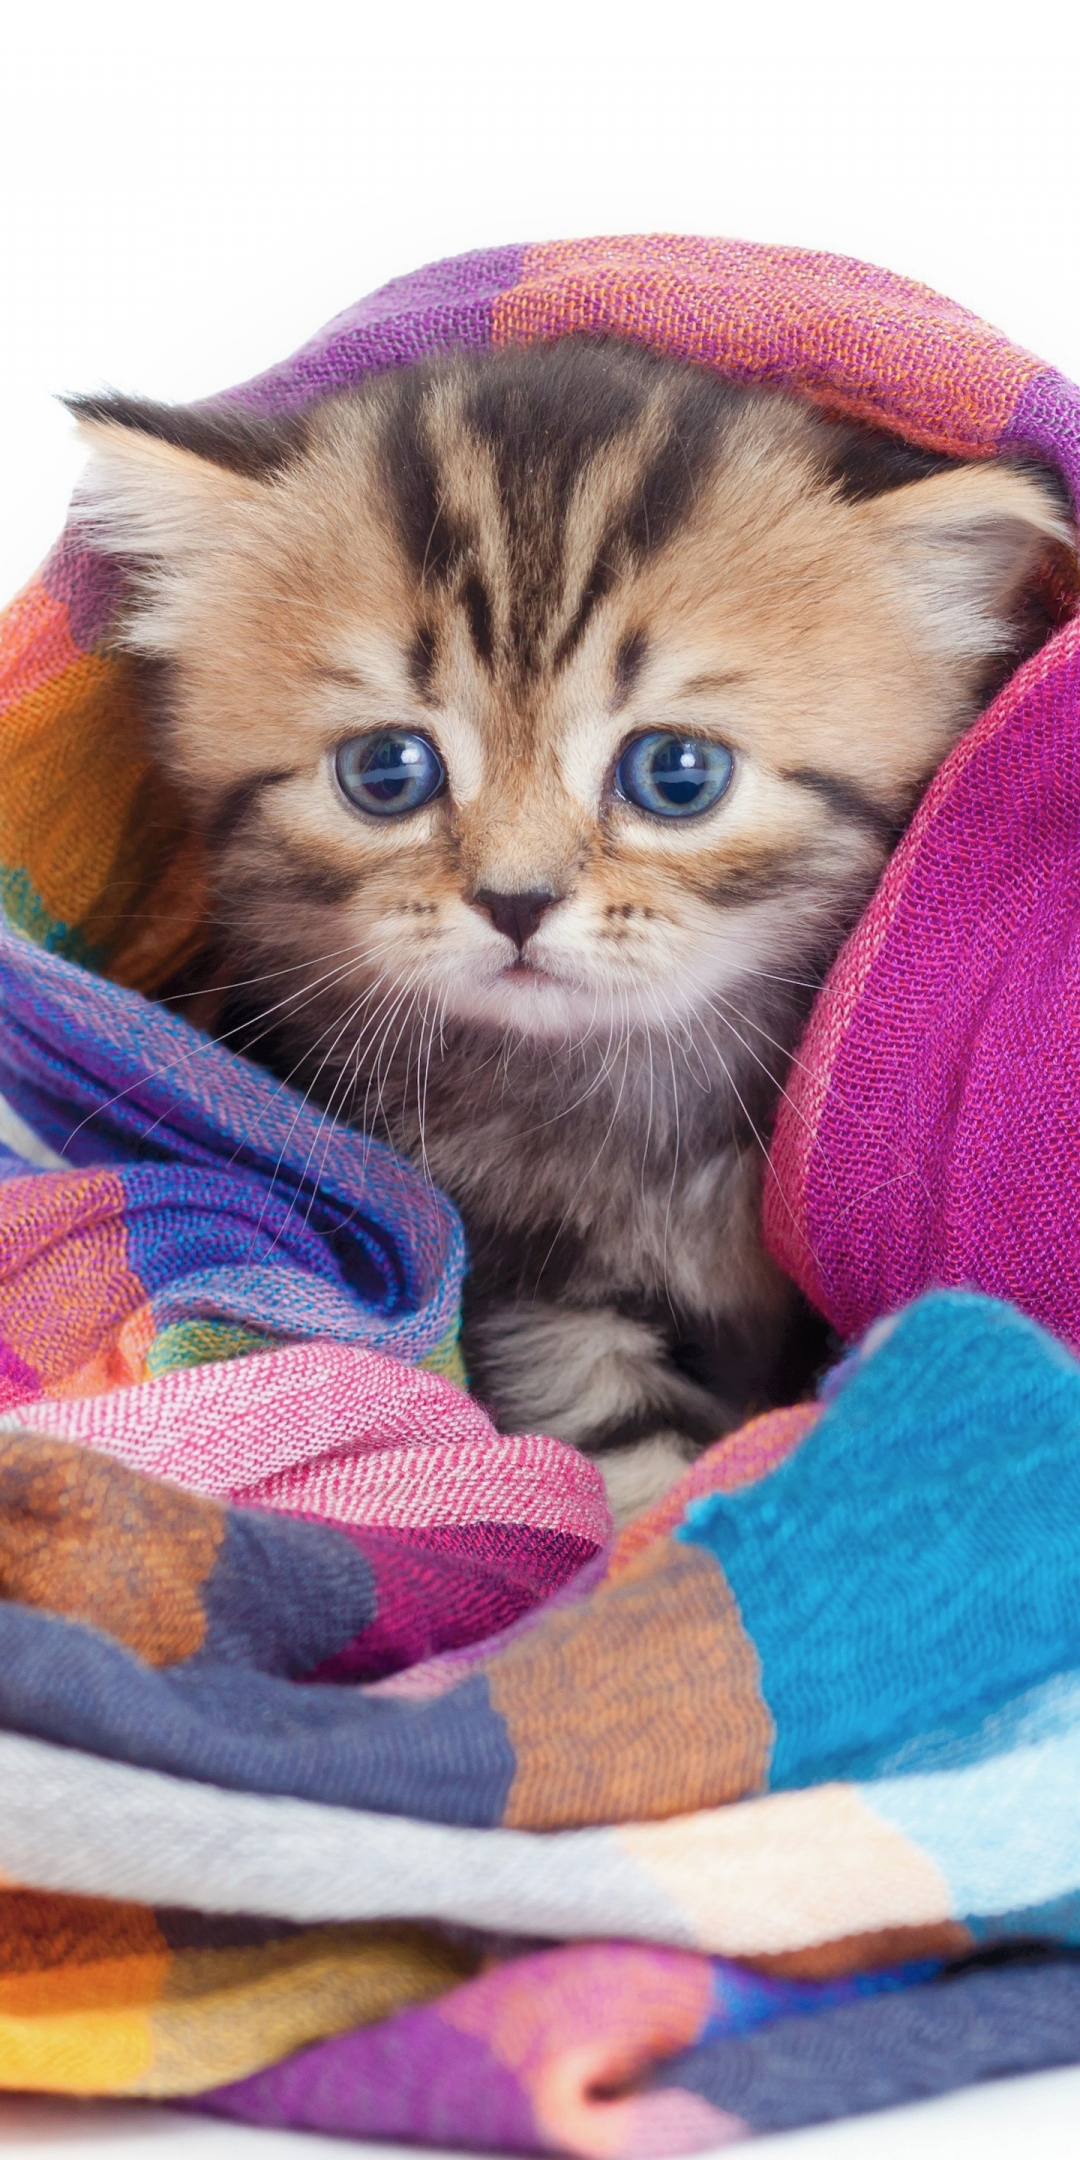 Cute, animal, feline wrap in blanket, 1080x2160 wallpaper